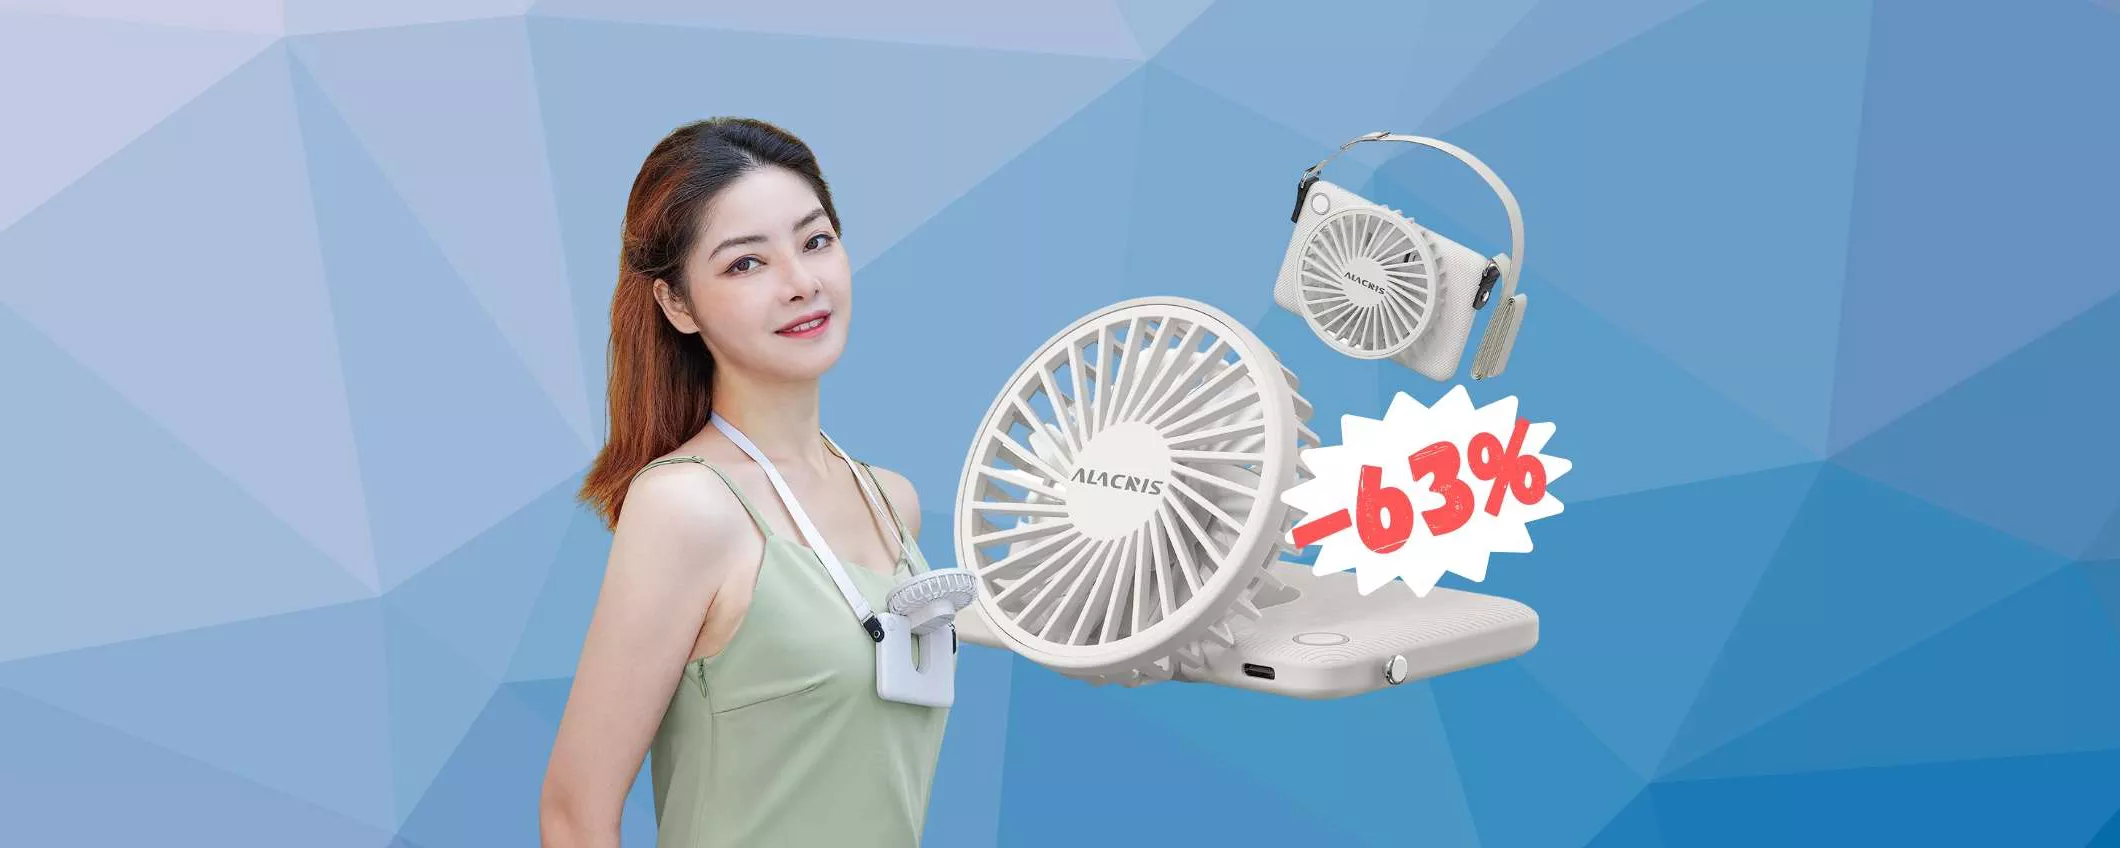 Mini ventilatore che puoi tenere al collo a SOLI 9,99€ su